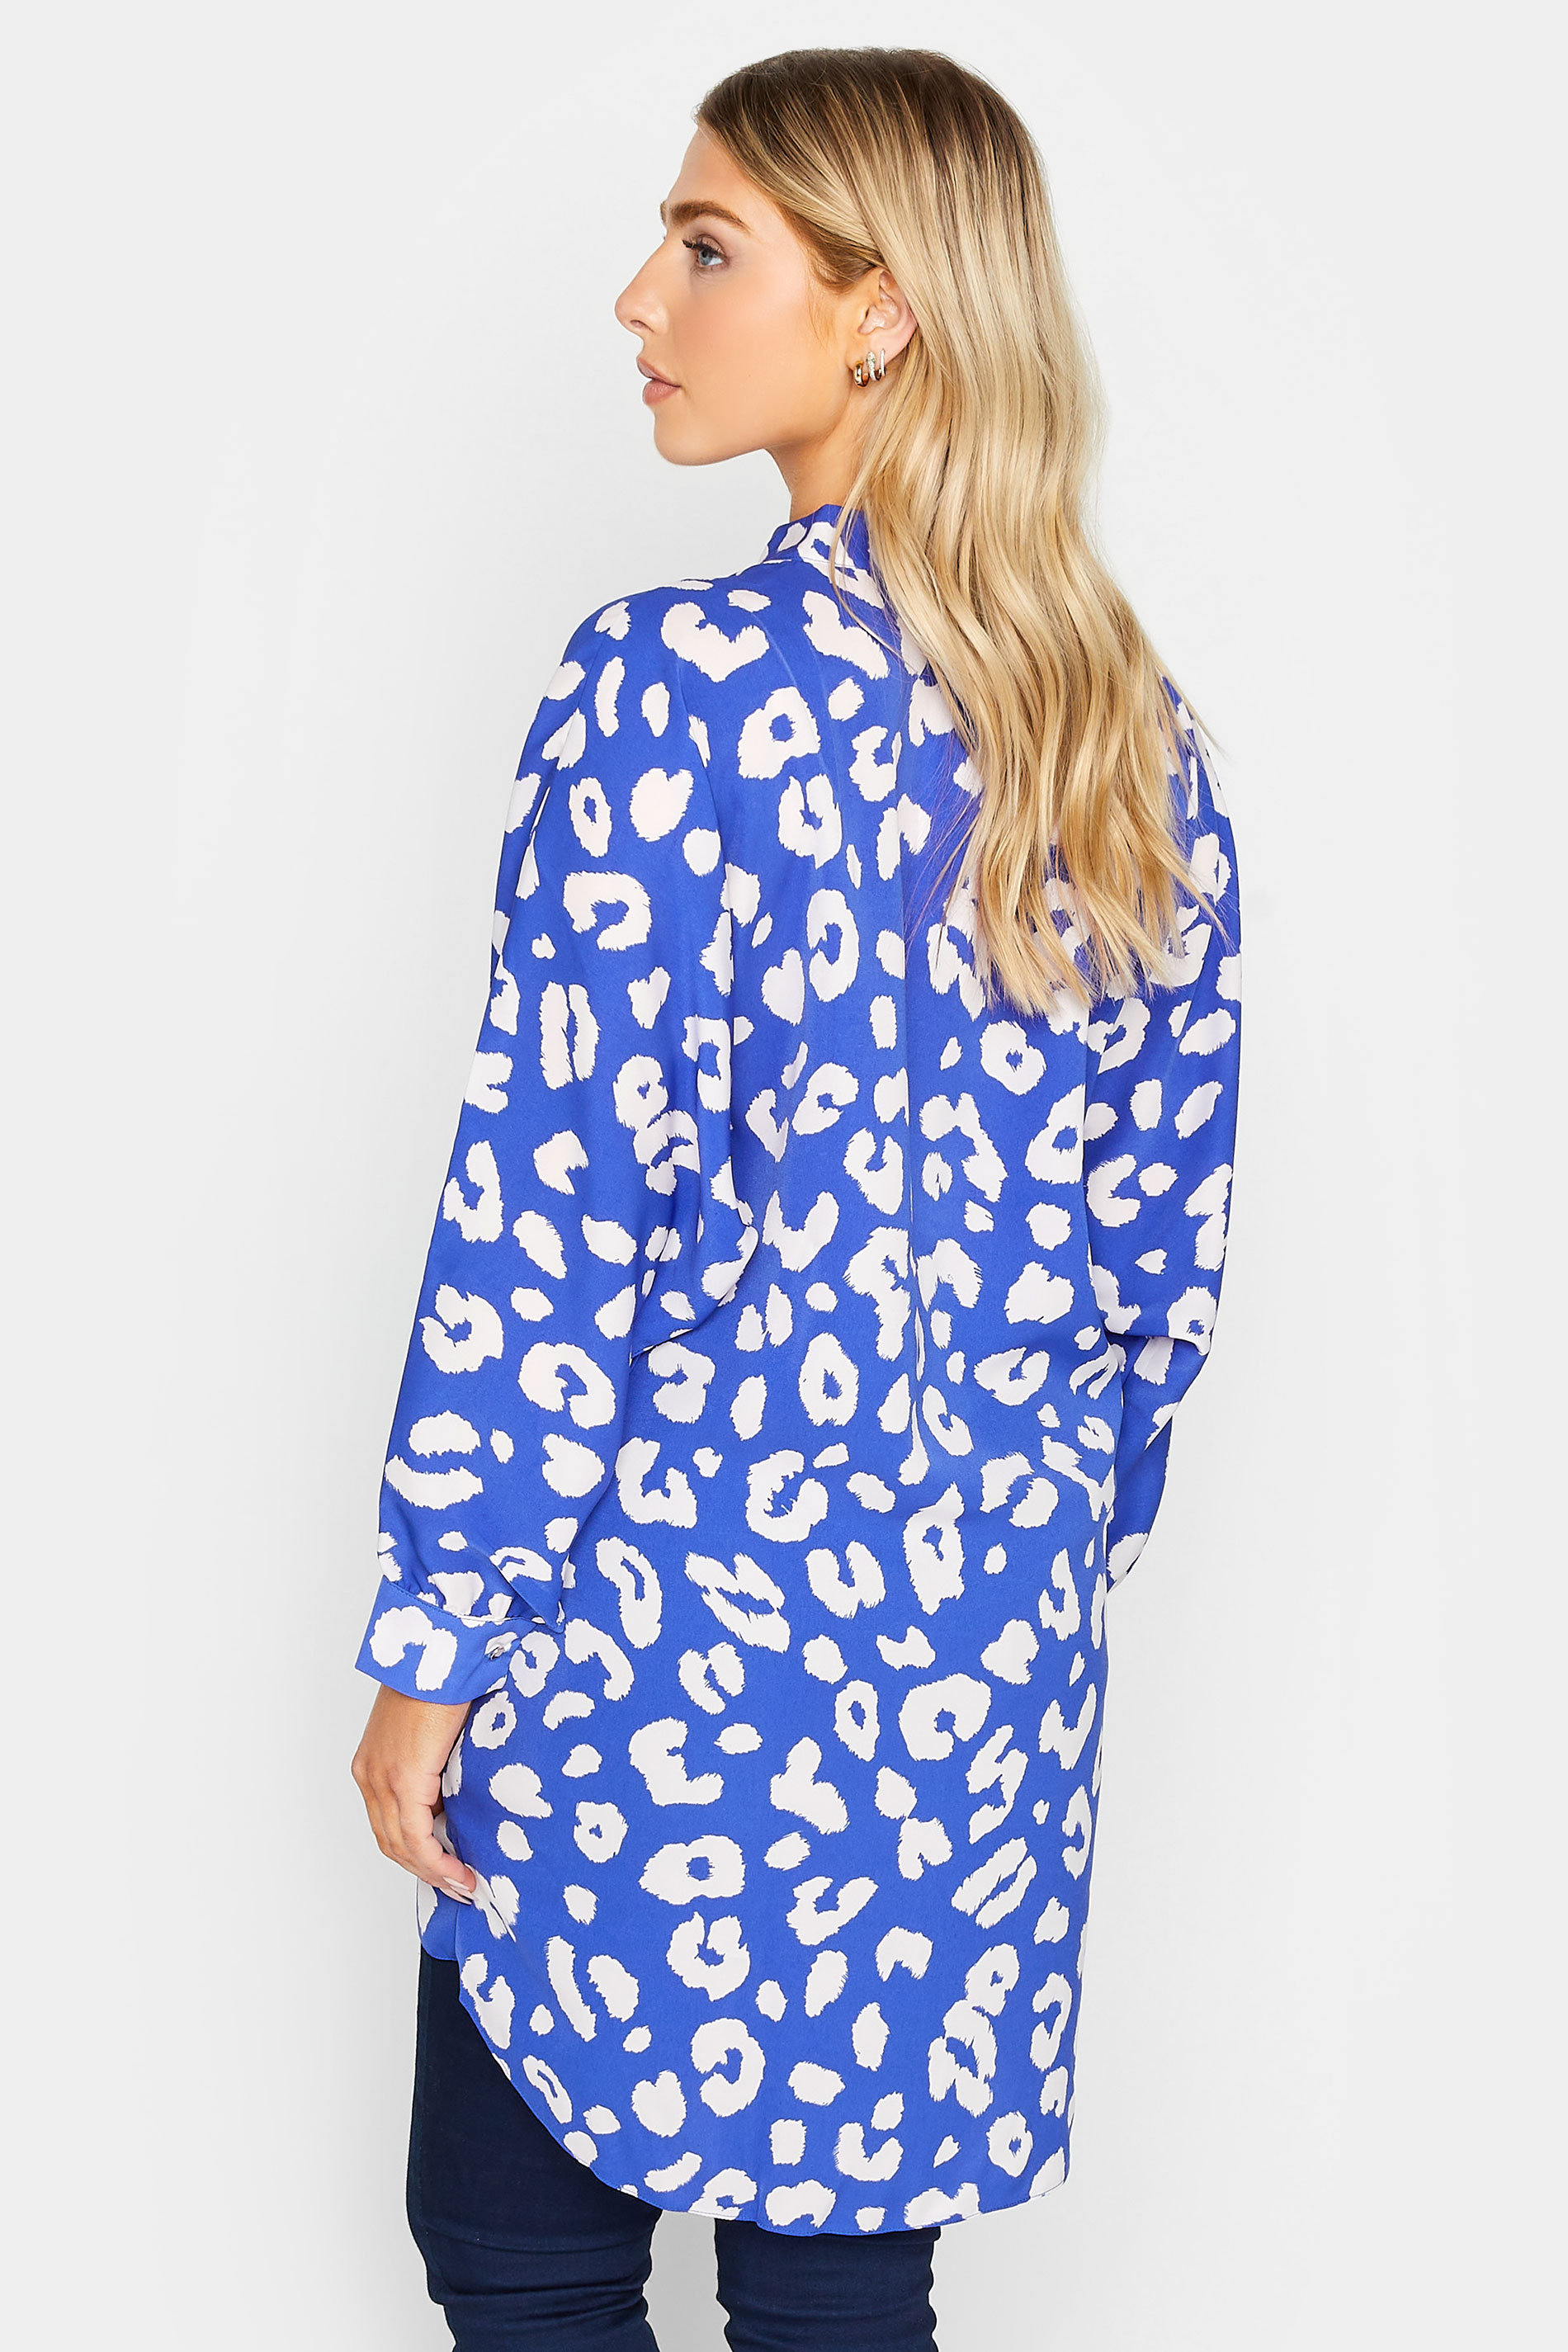 M&Co Blue Leopard Print Blouse | M&Co 3